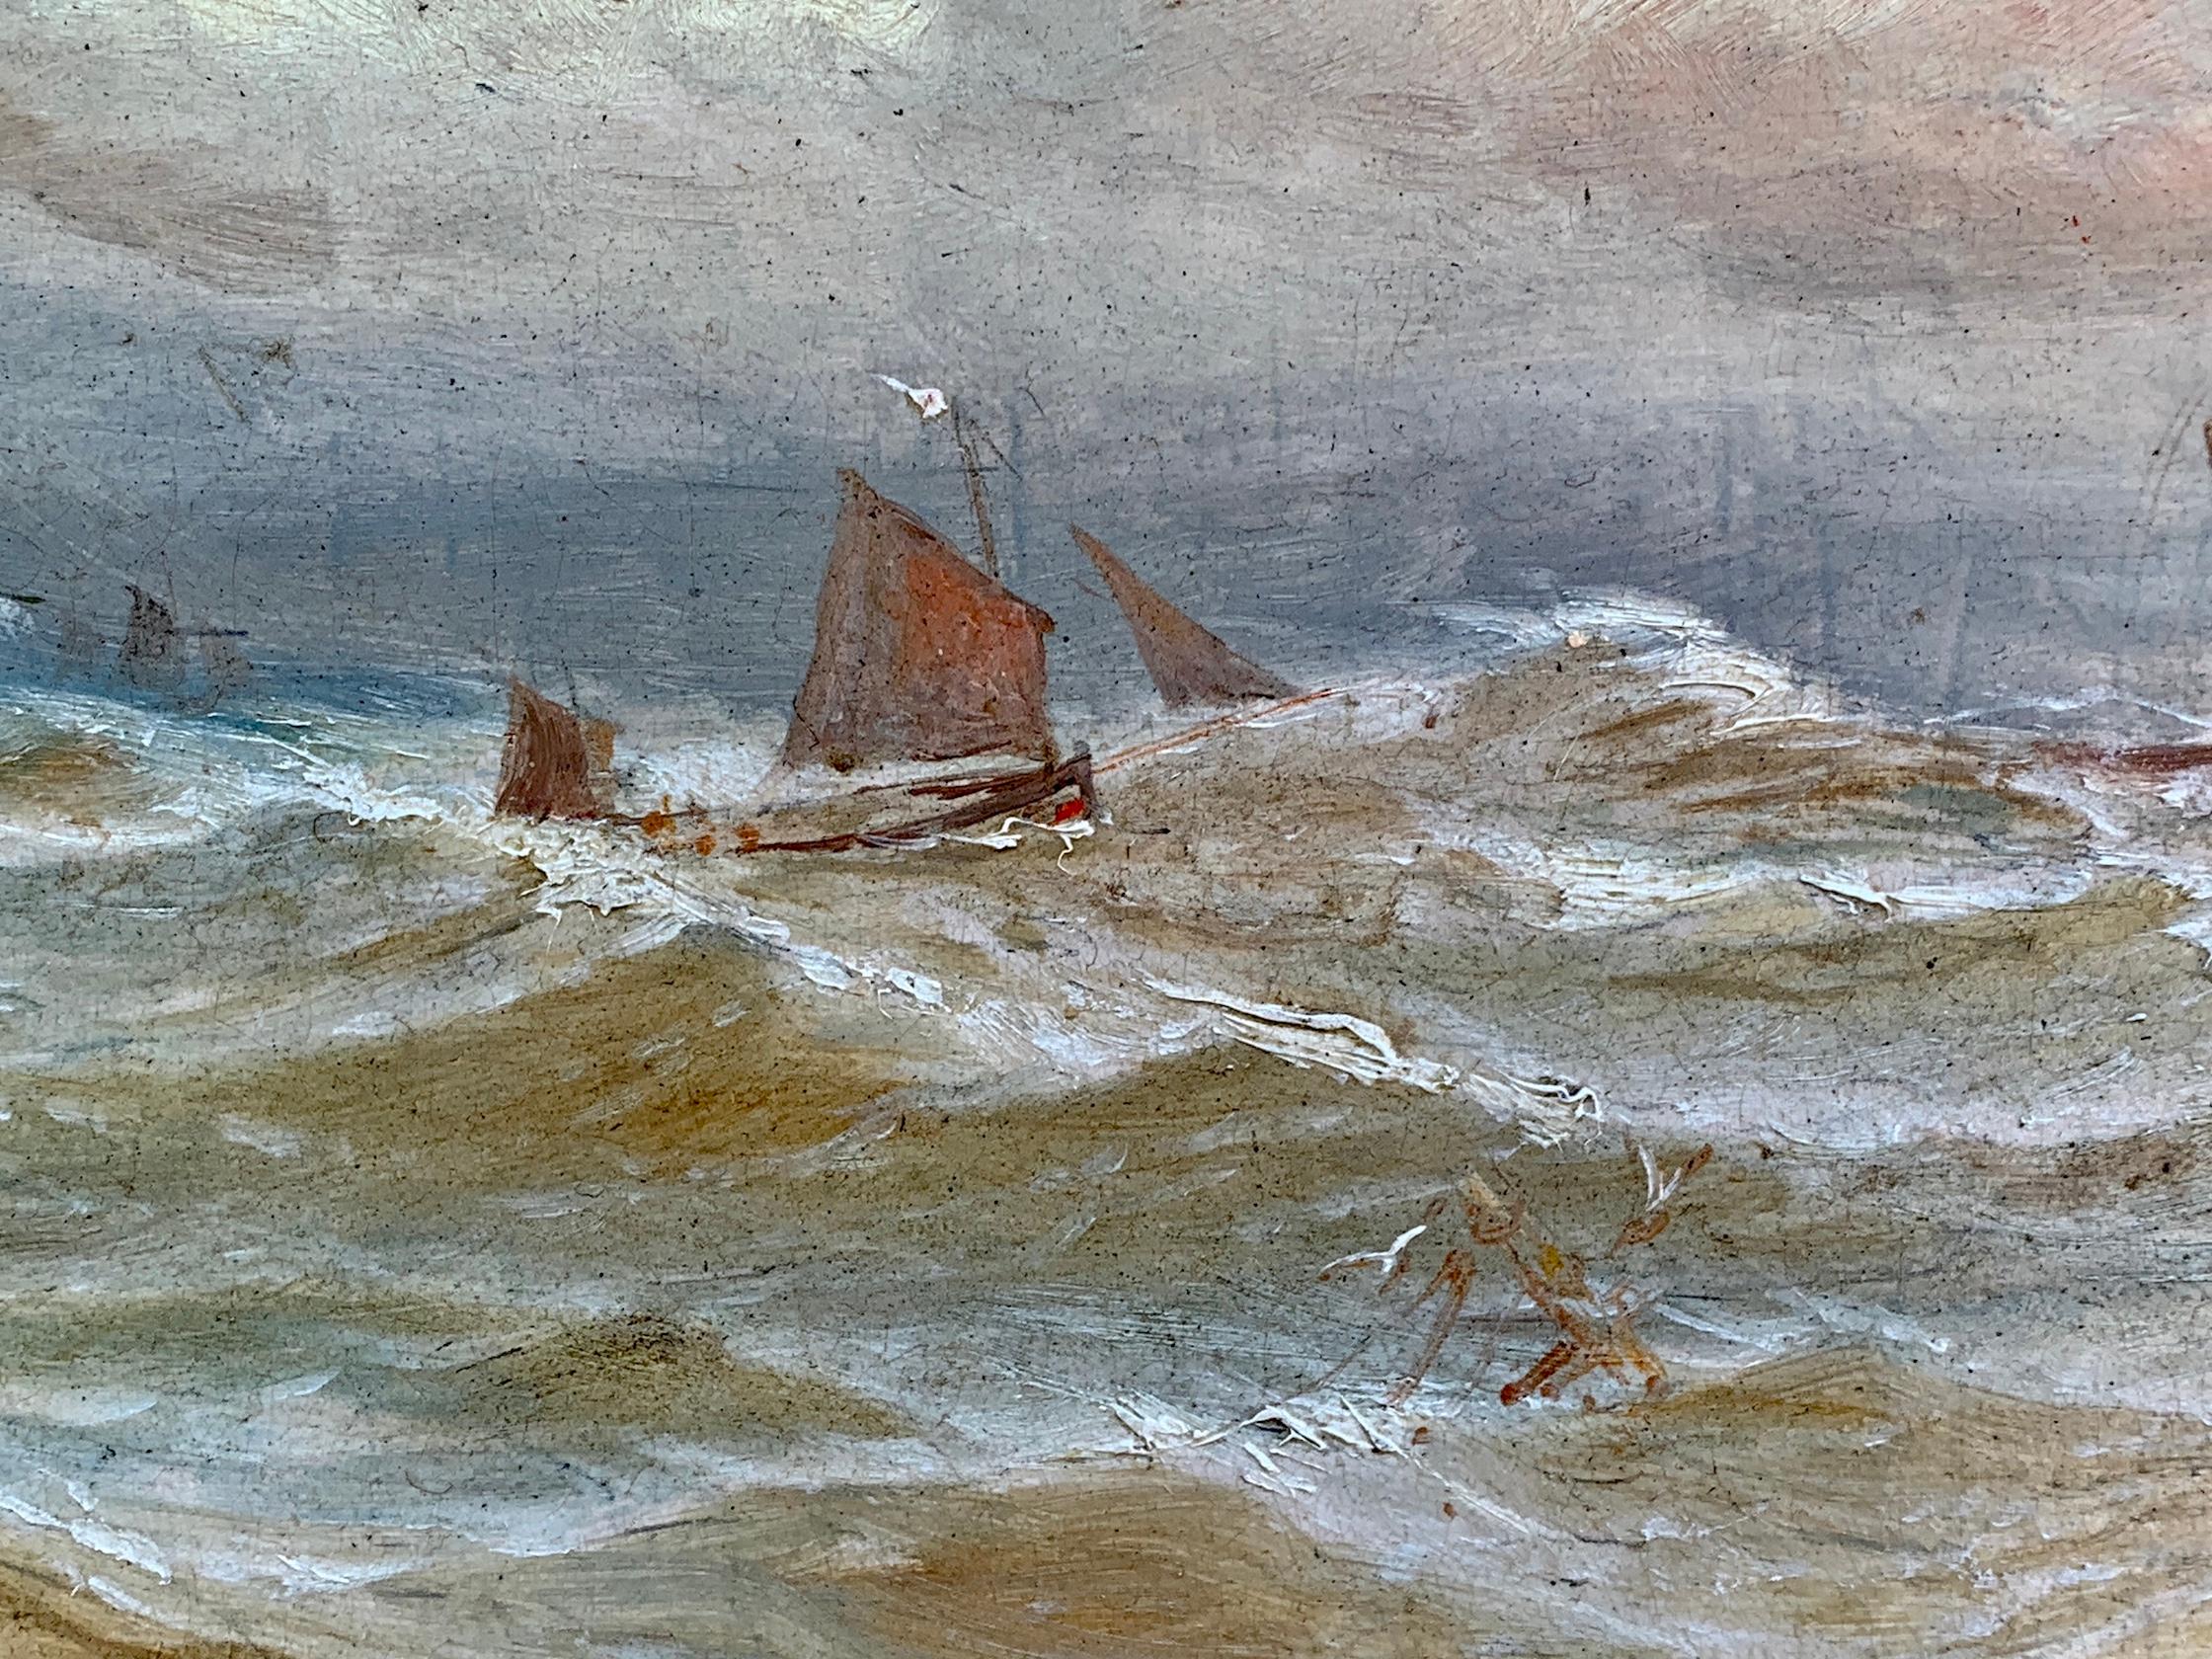 Huile britannique du XIXe siècle, Navire dans une mer agitée.

Le style de la peinture est très proche de l'œuvre de Bernard Benedict Hemy, un peintre de marine britannique bien connu du nord de l'Angleterre.

Il a peint dans un style fluide, bien